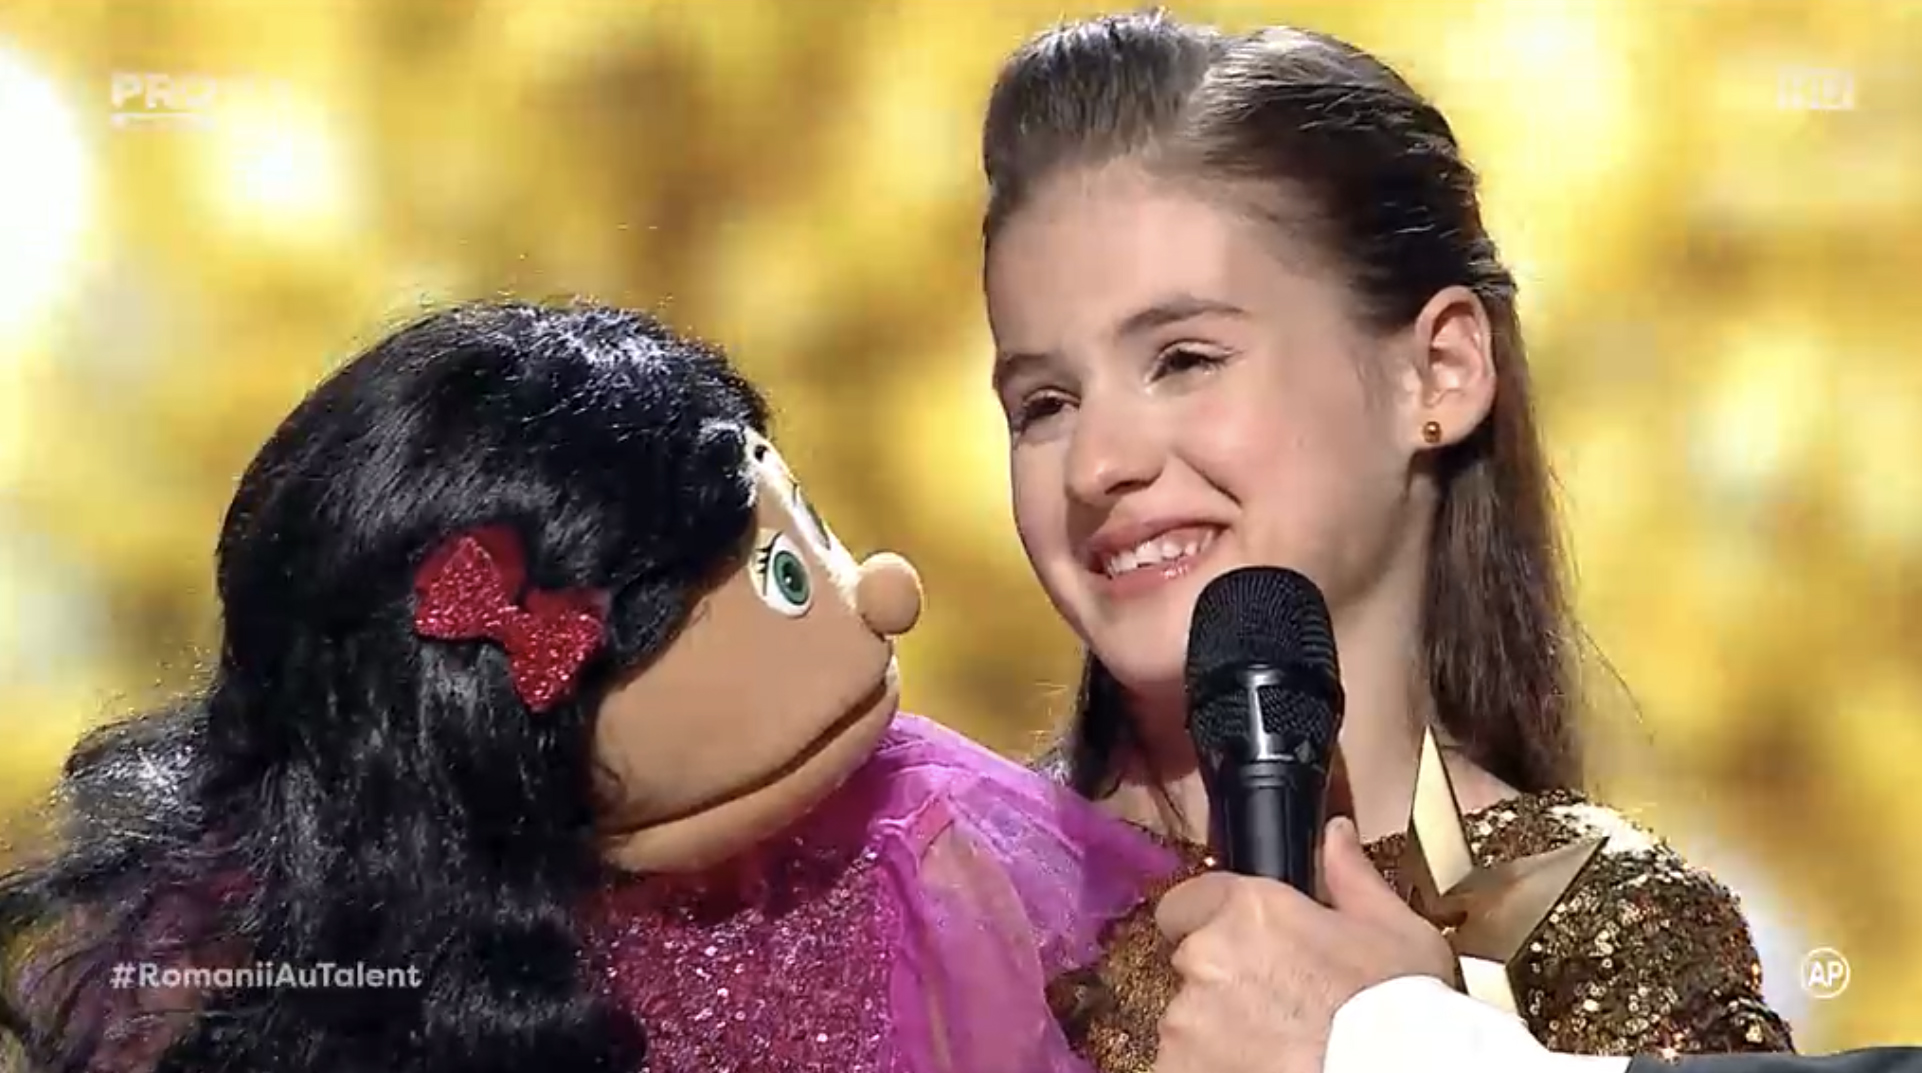 Îţi mai aminteşti de Ana-Maria Mărgean, fetiţa ventriloc de la „Românii au talent”? Viaţa ei a căpătat o turnură neaşteptată